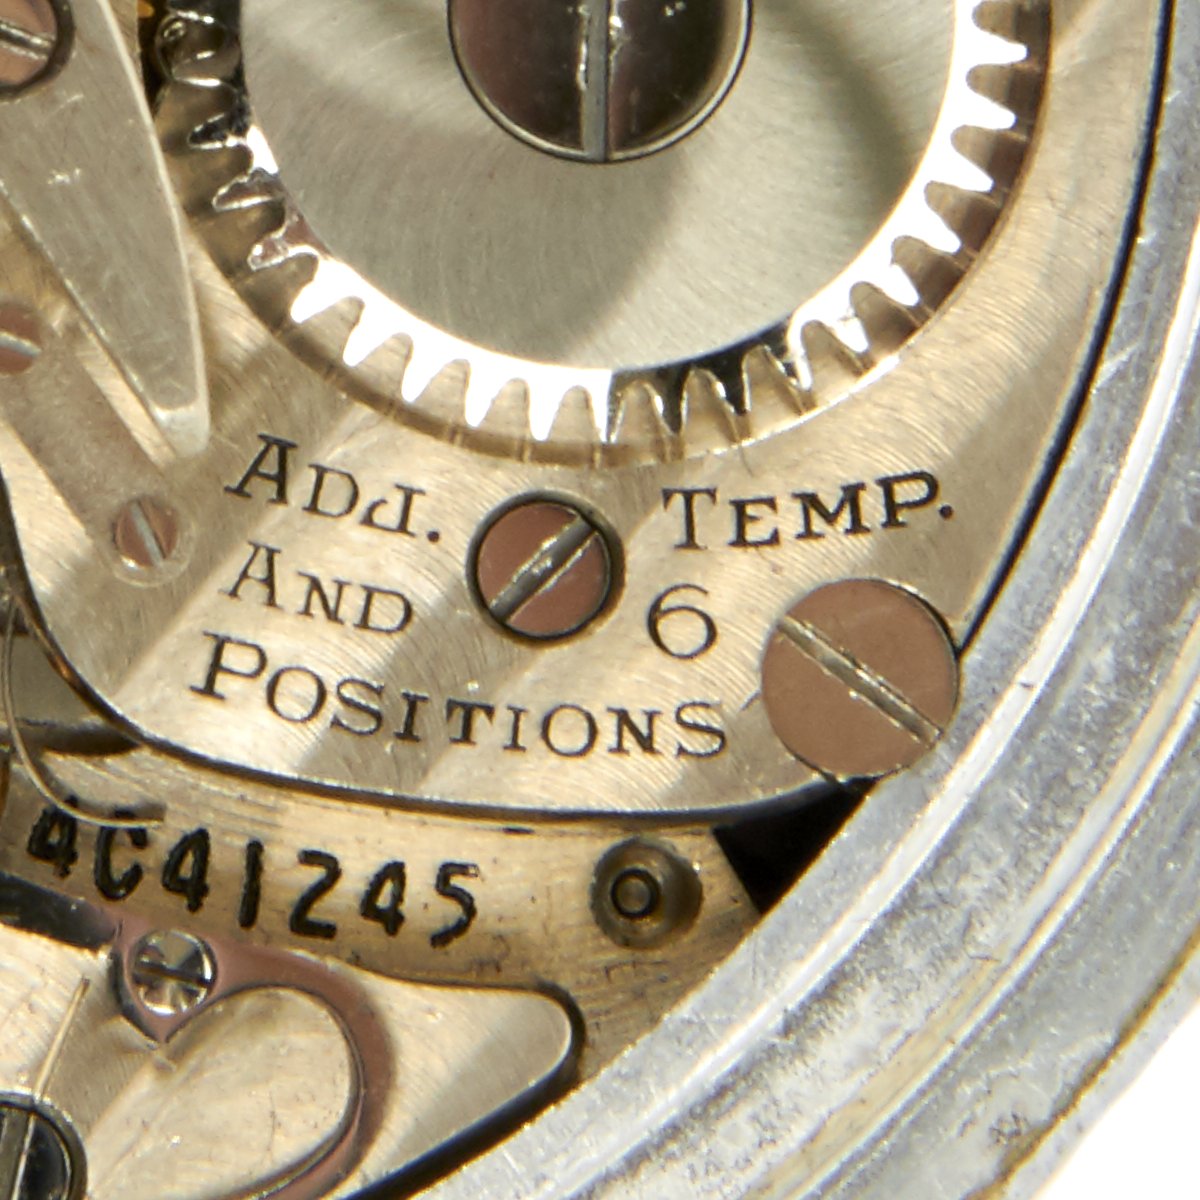 hamilton an5740 pocket watch serial number af-44-2003